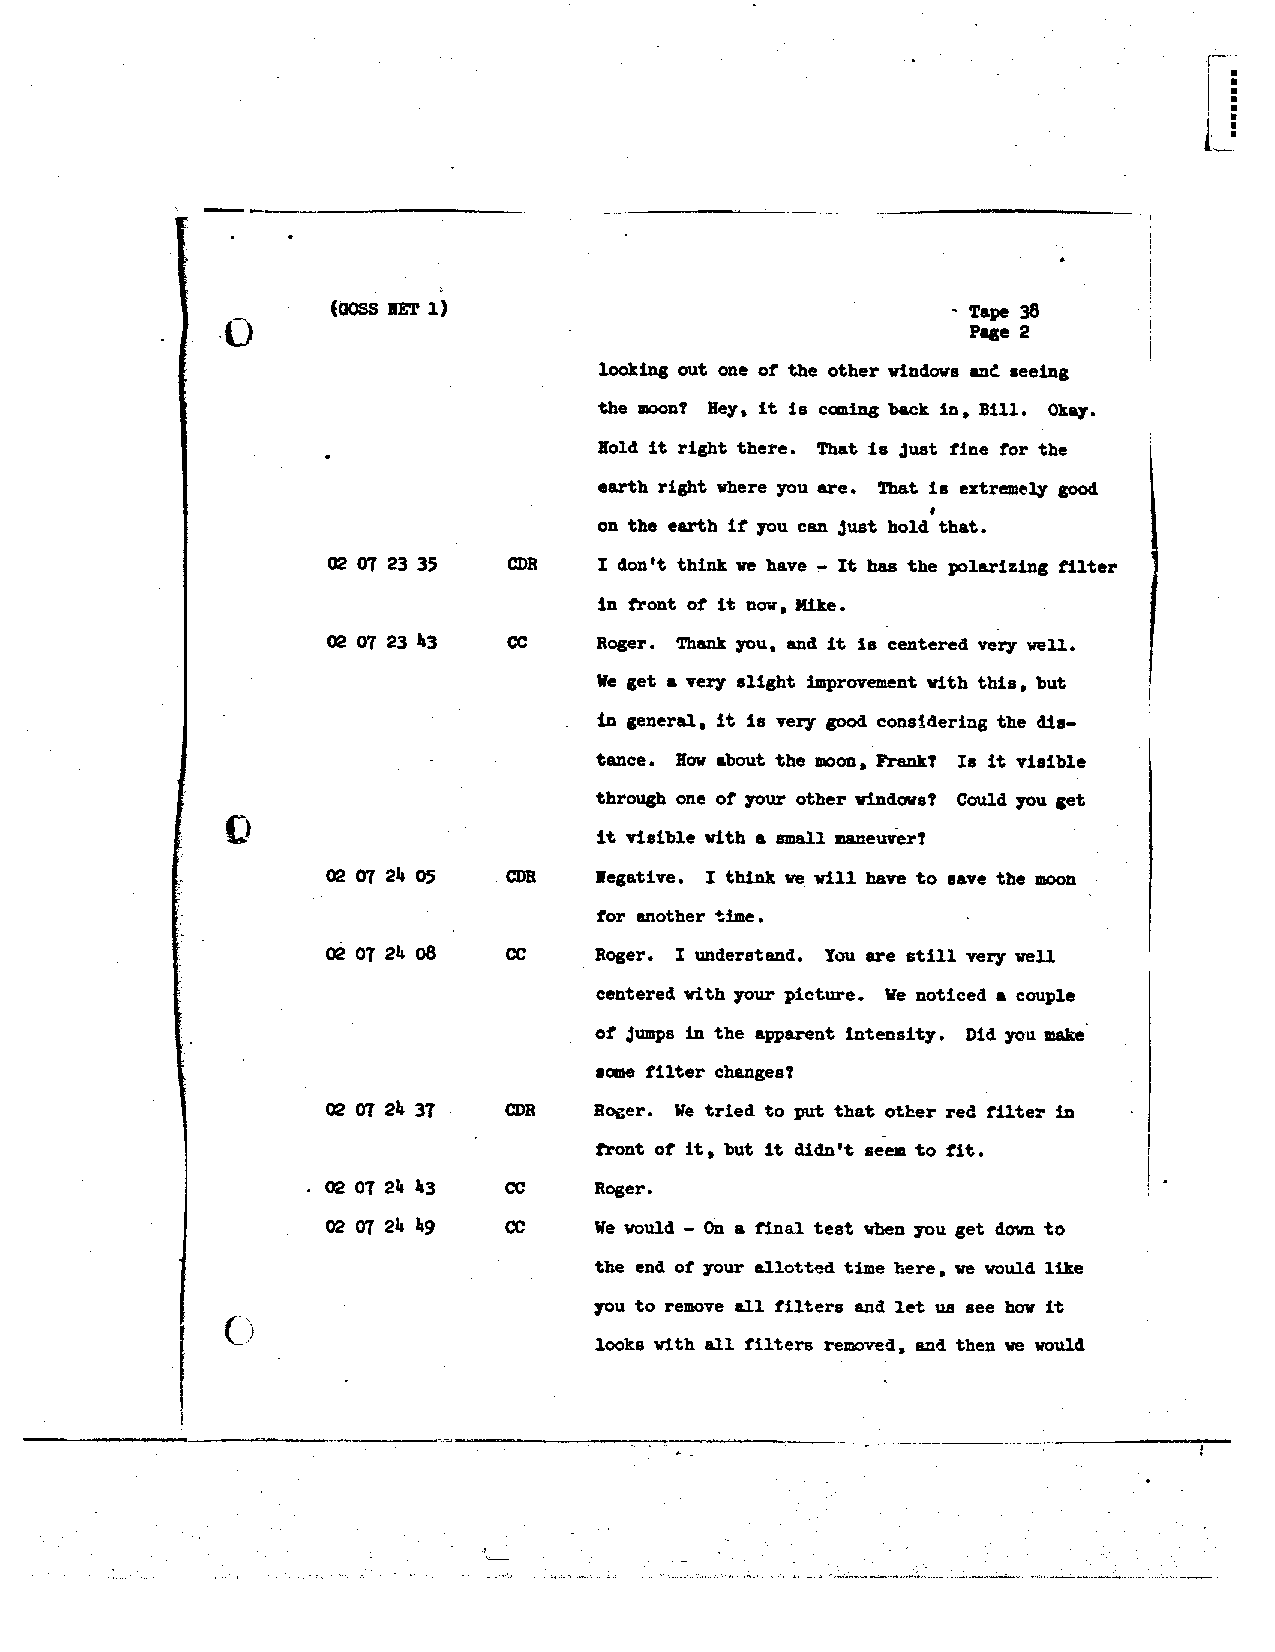 Page 296 of Apollo 8’s original transcript